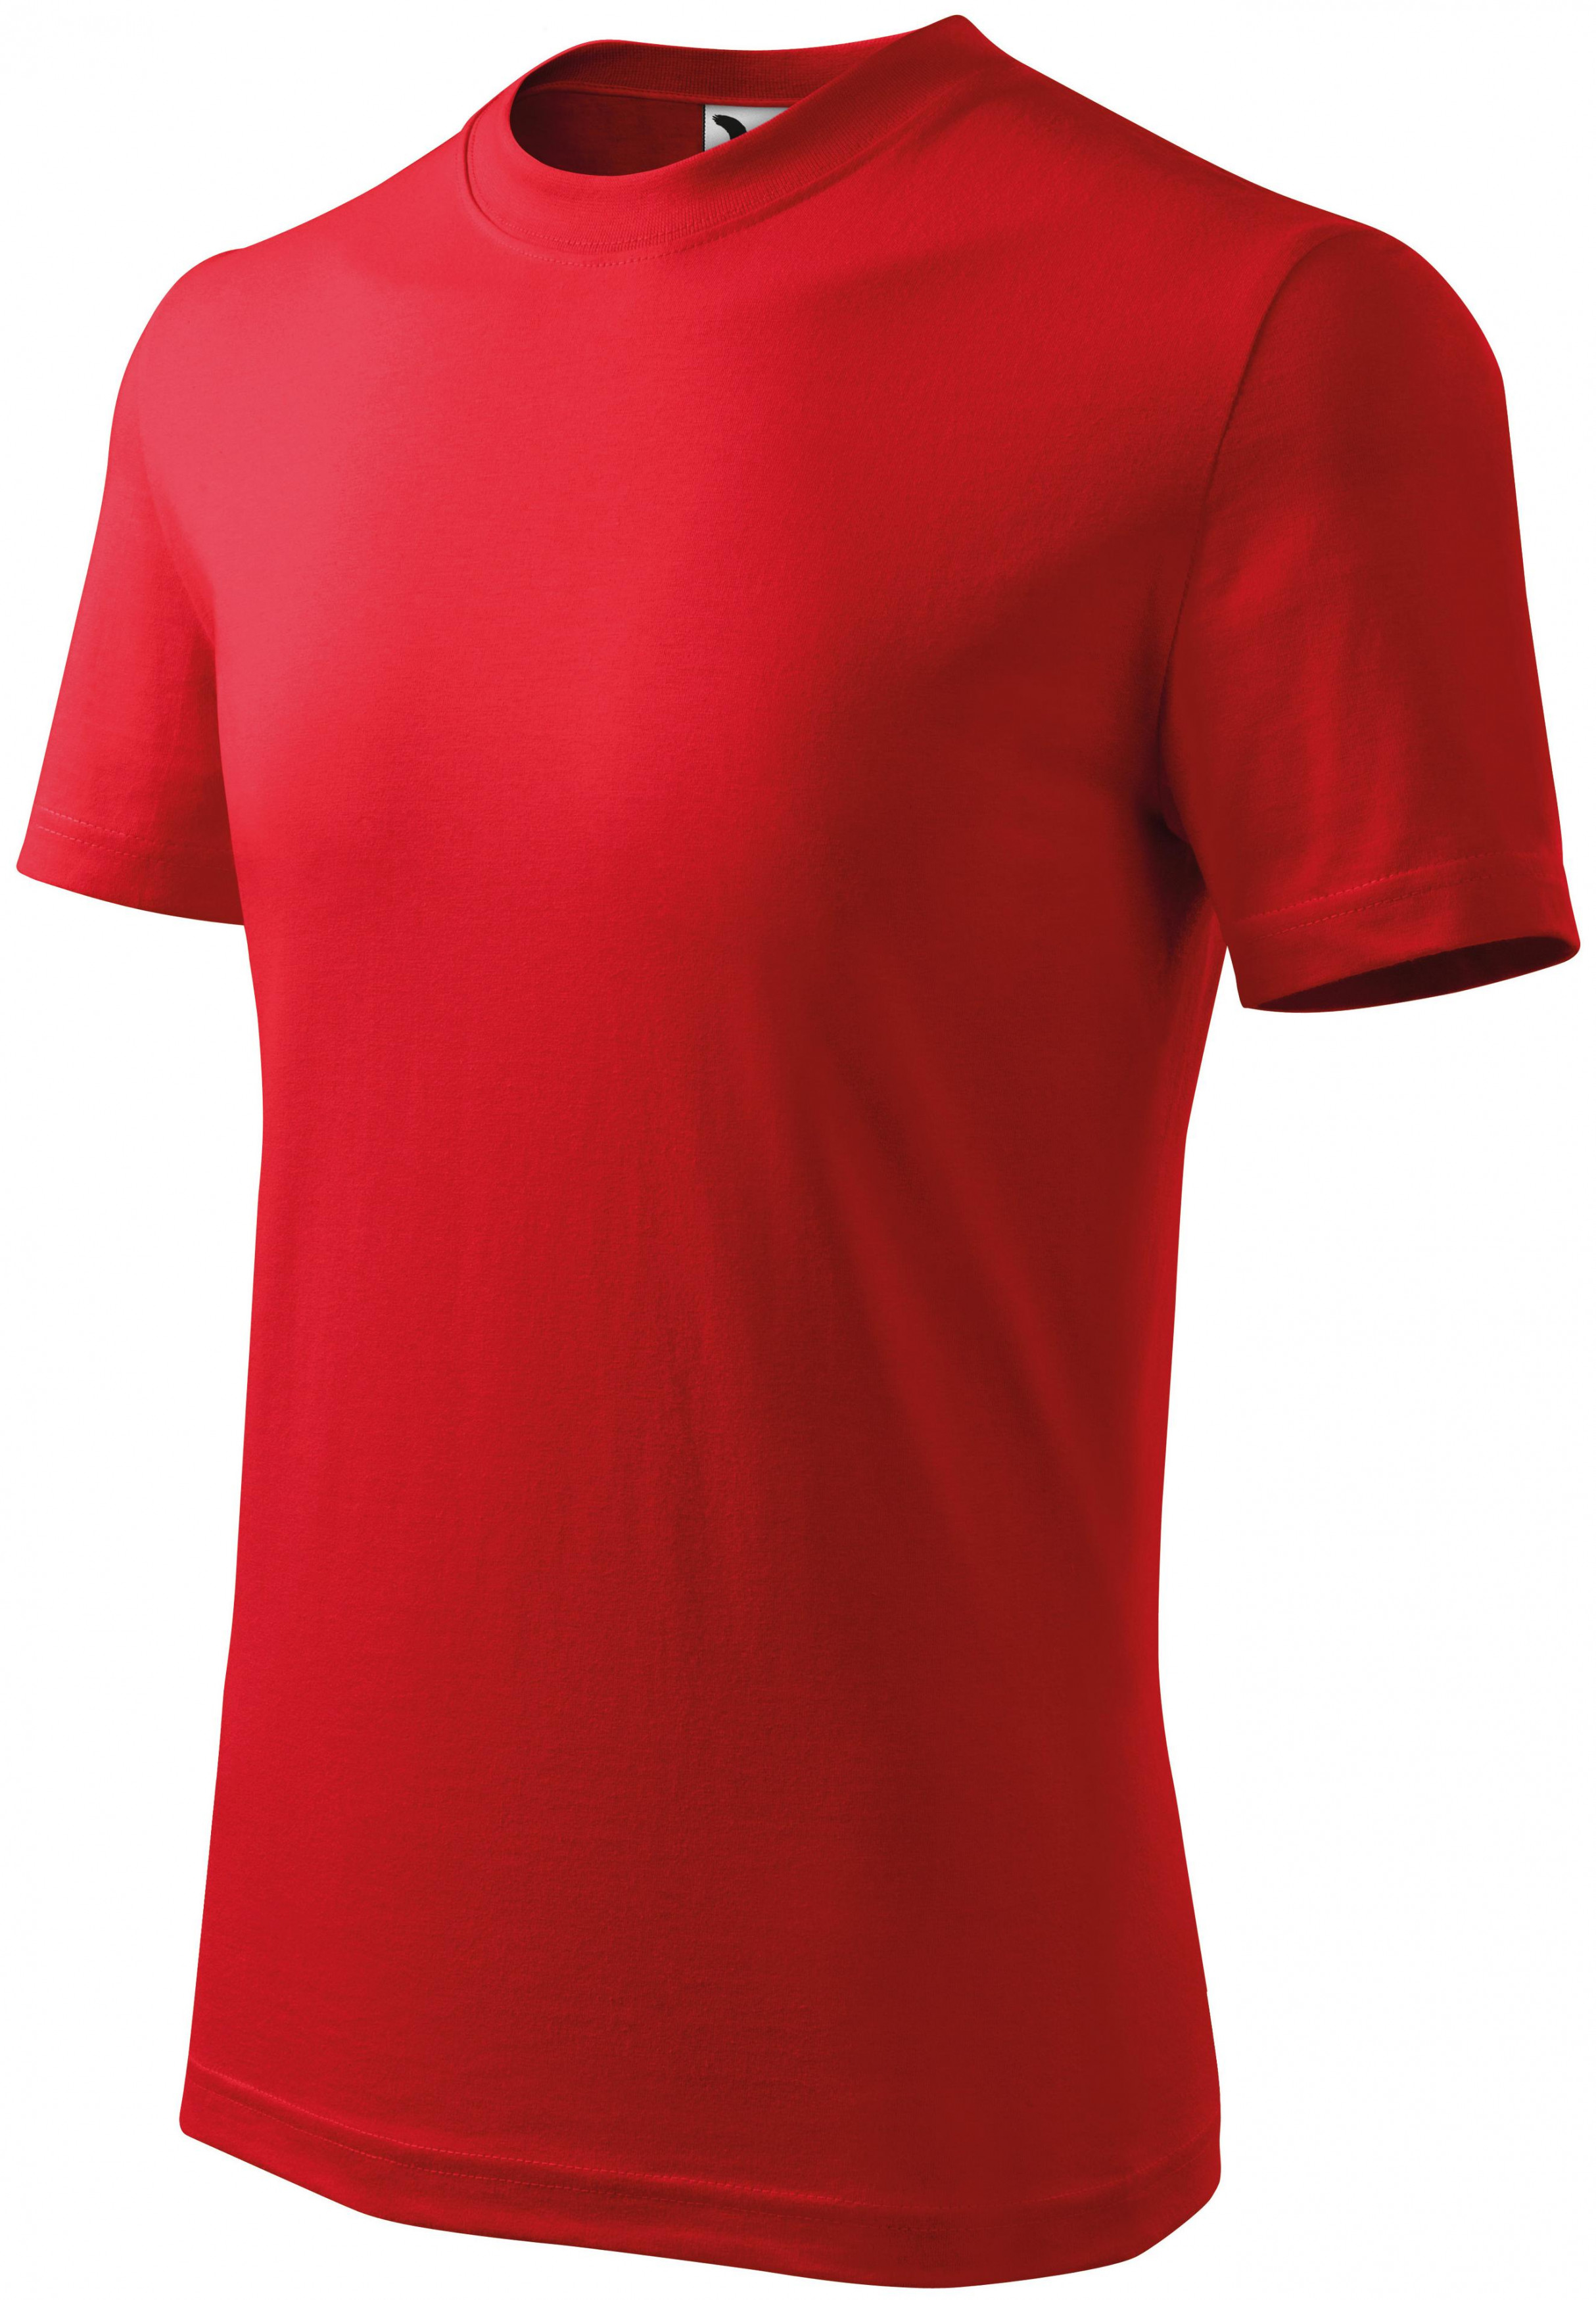 Detské tričko jednoduché, červená, 146cm / 10rokov